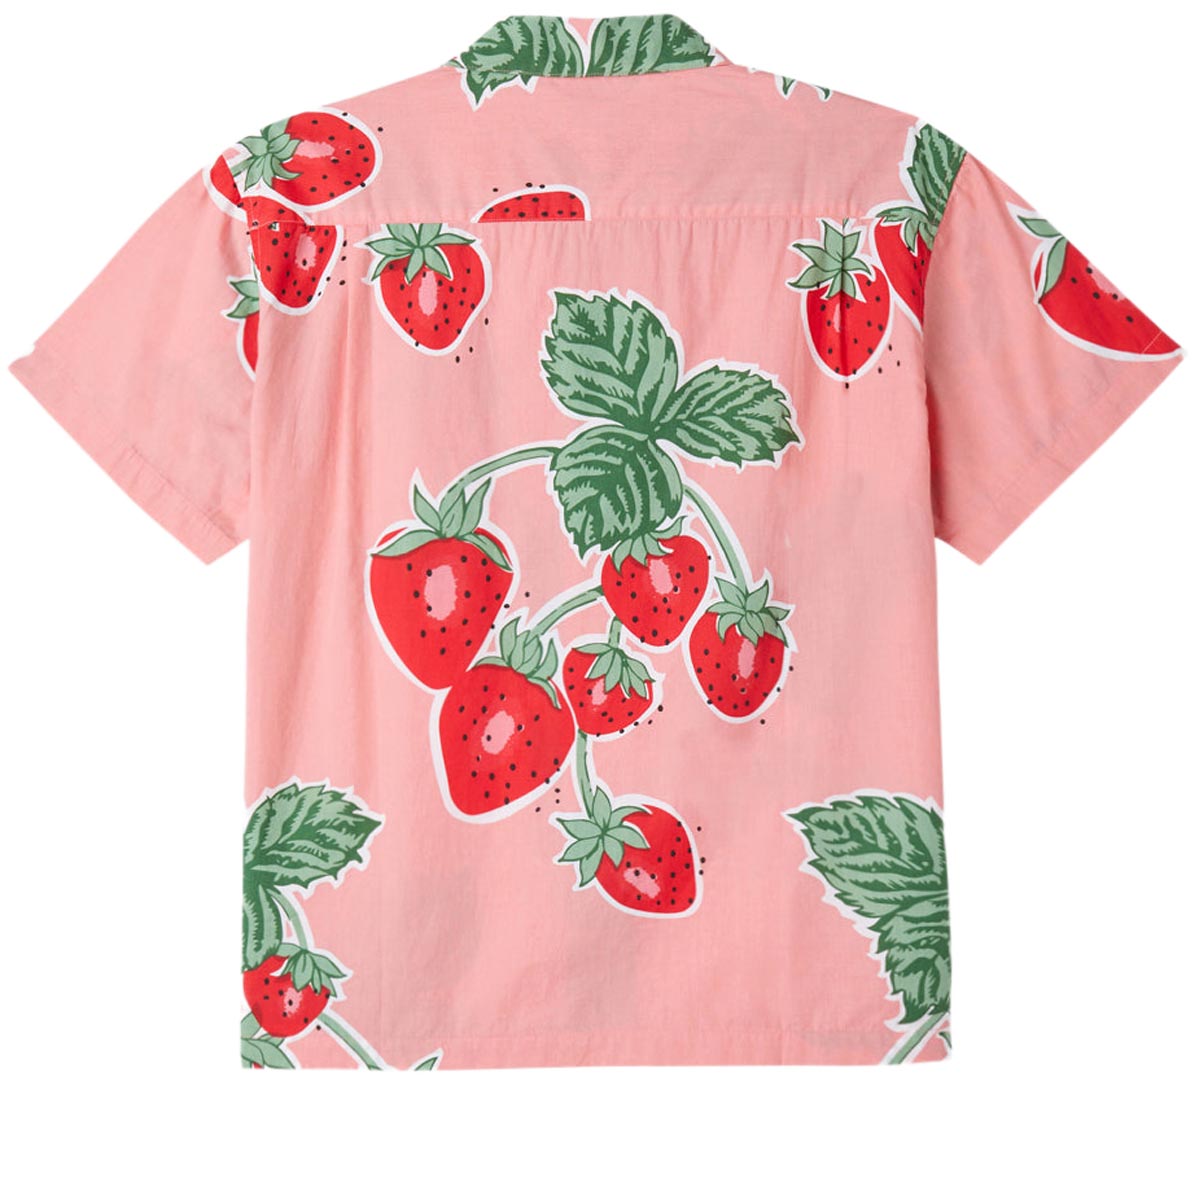 Obey Jumbo Berries Woven Shirt - Flamingo Pink Multi image 2